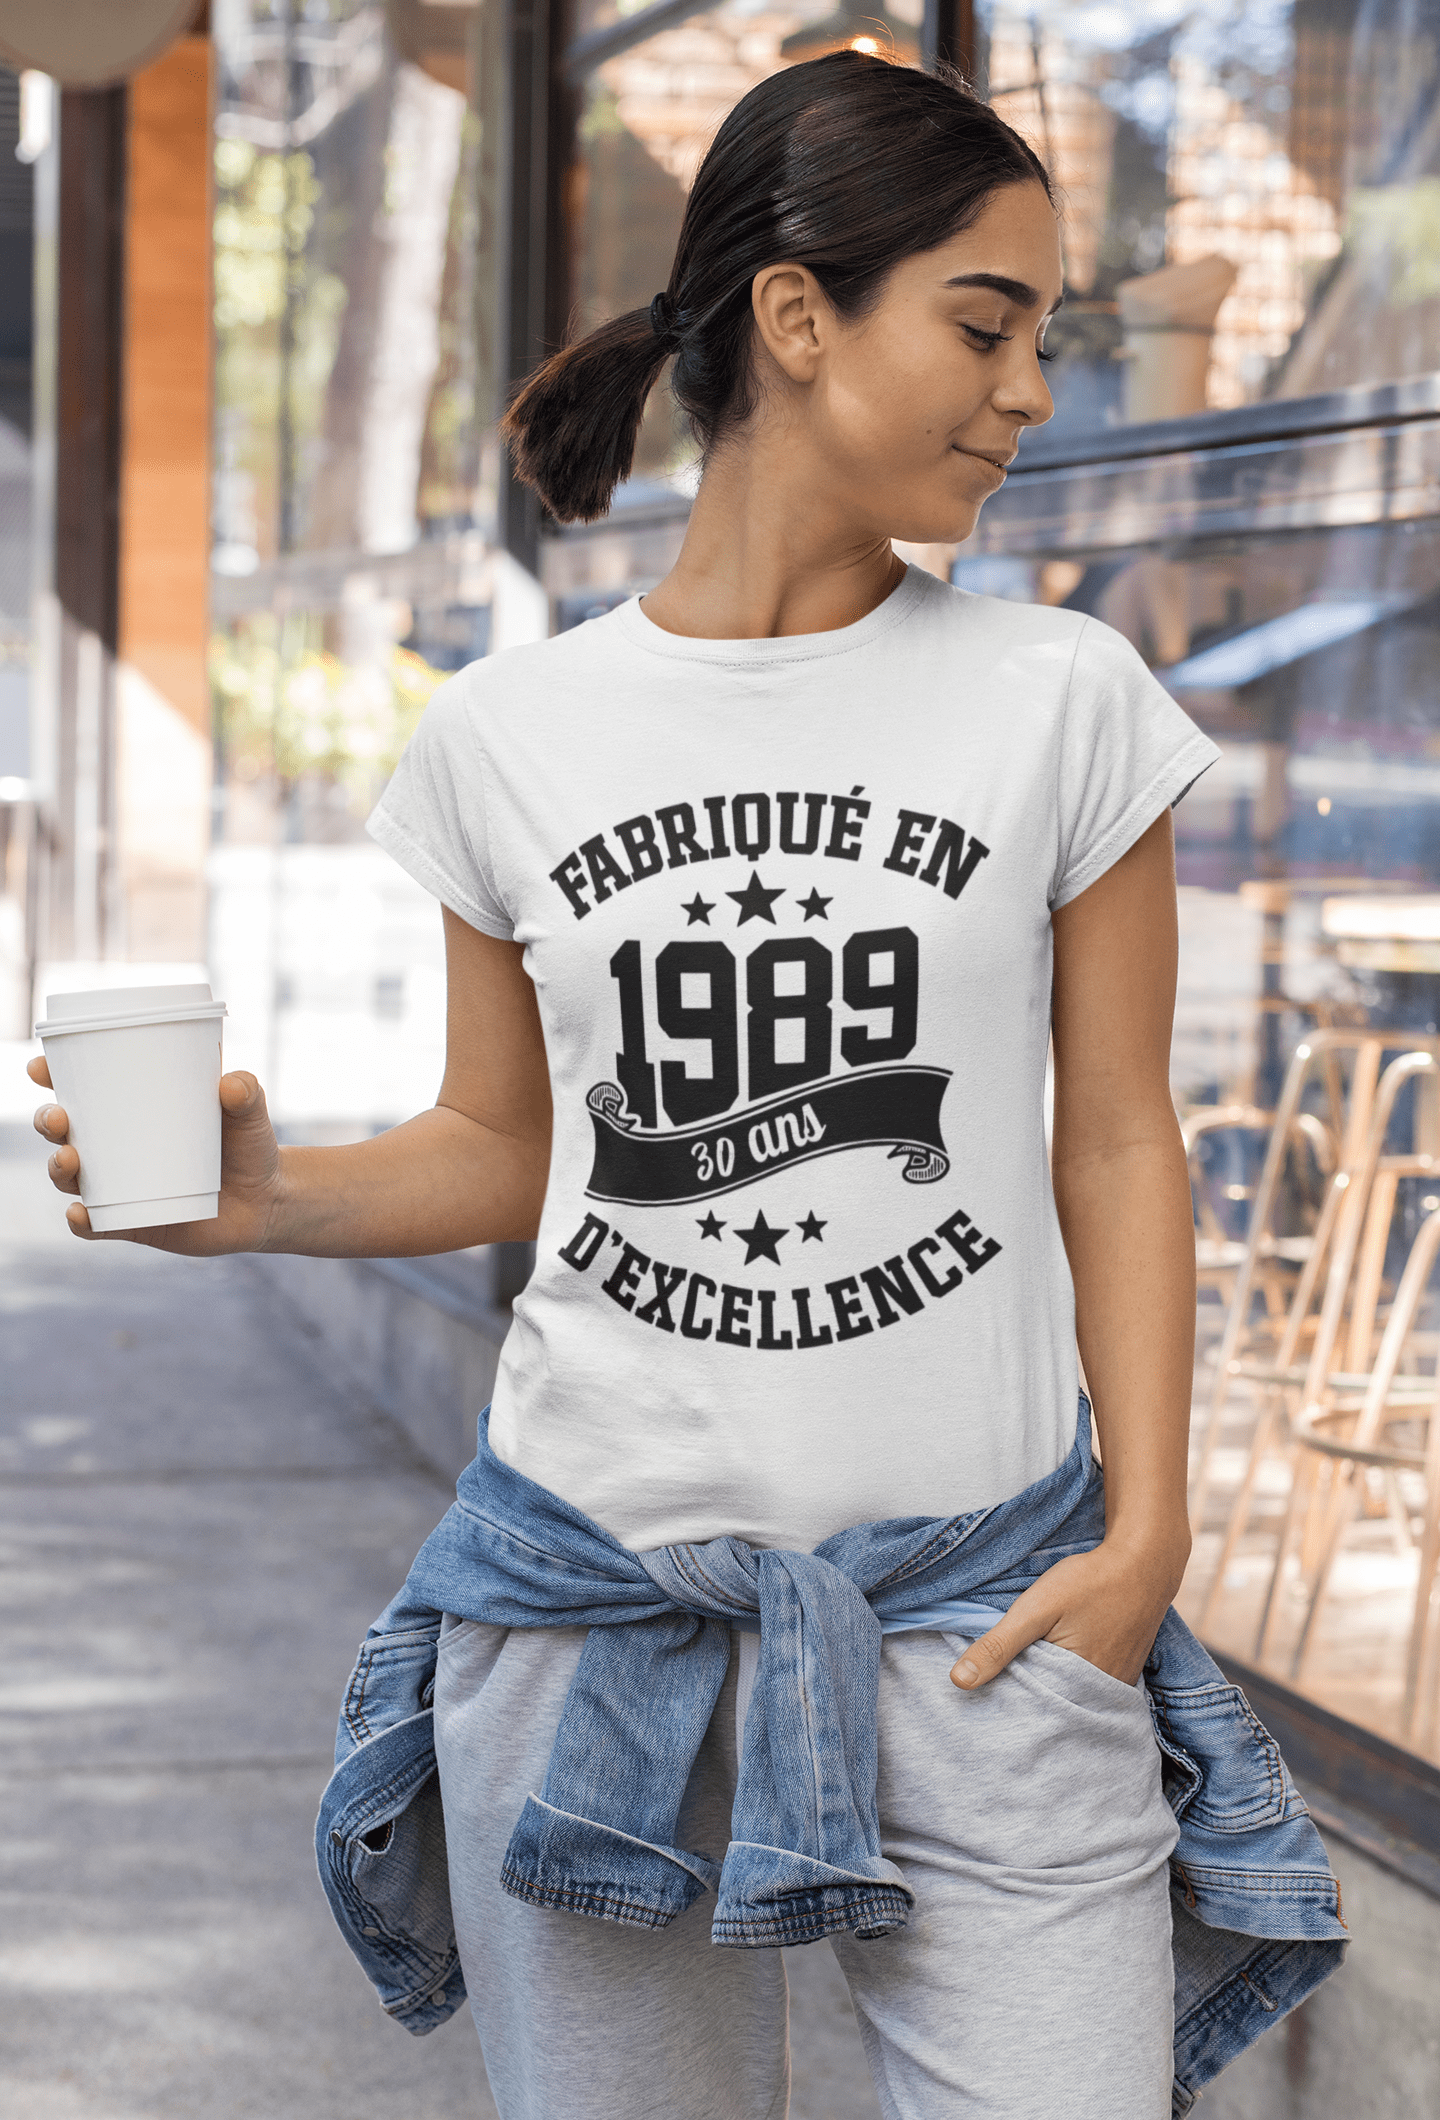 Ultrabasic - Tee-Shirt Femme col Rond Décolleté Fabriqué en 1989, 30 Ans d'être Génial T-Shirt Blanco